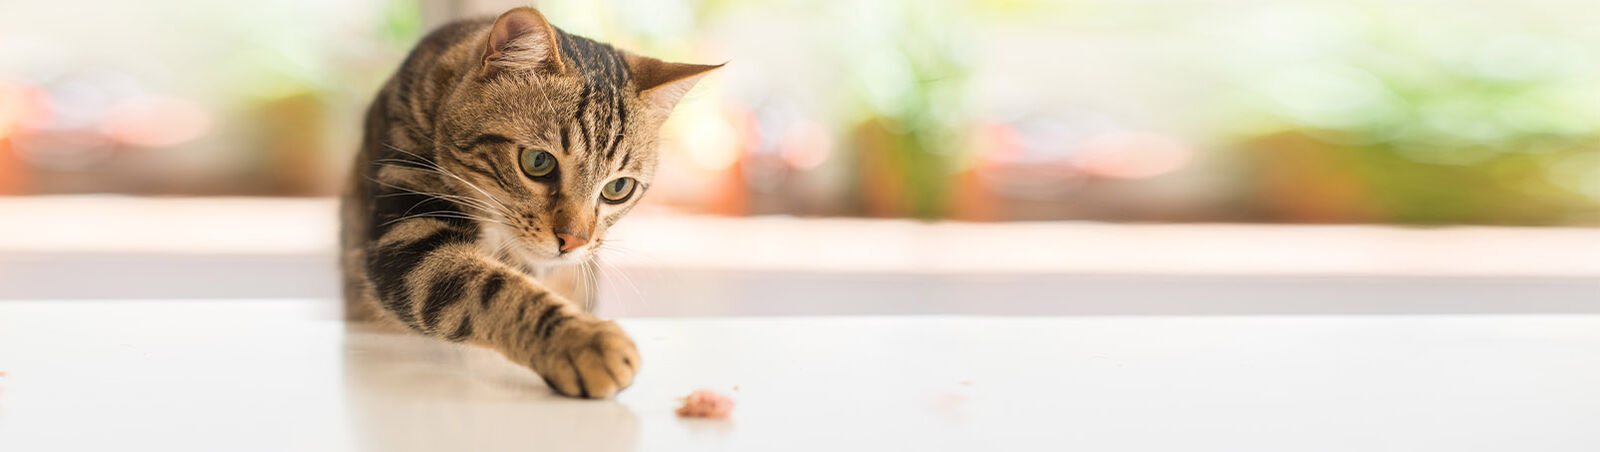 Eine Katze streckt eine Pfote nach einem Stück Futter aus.